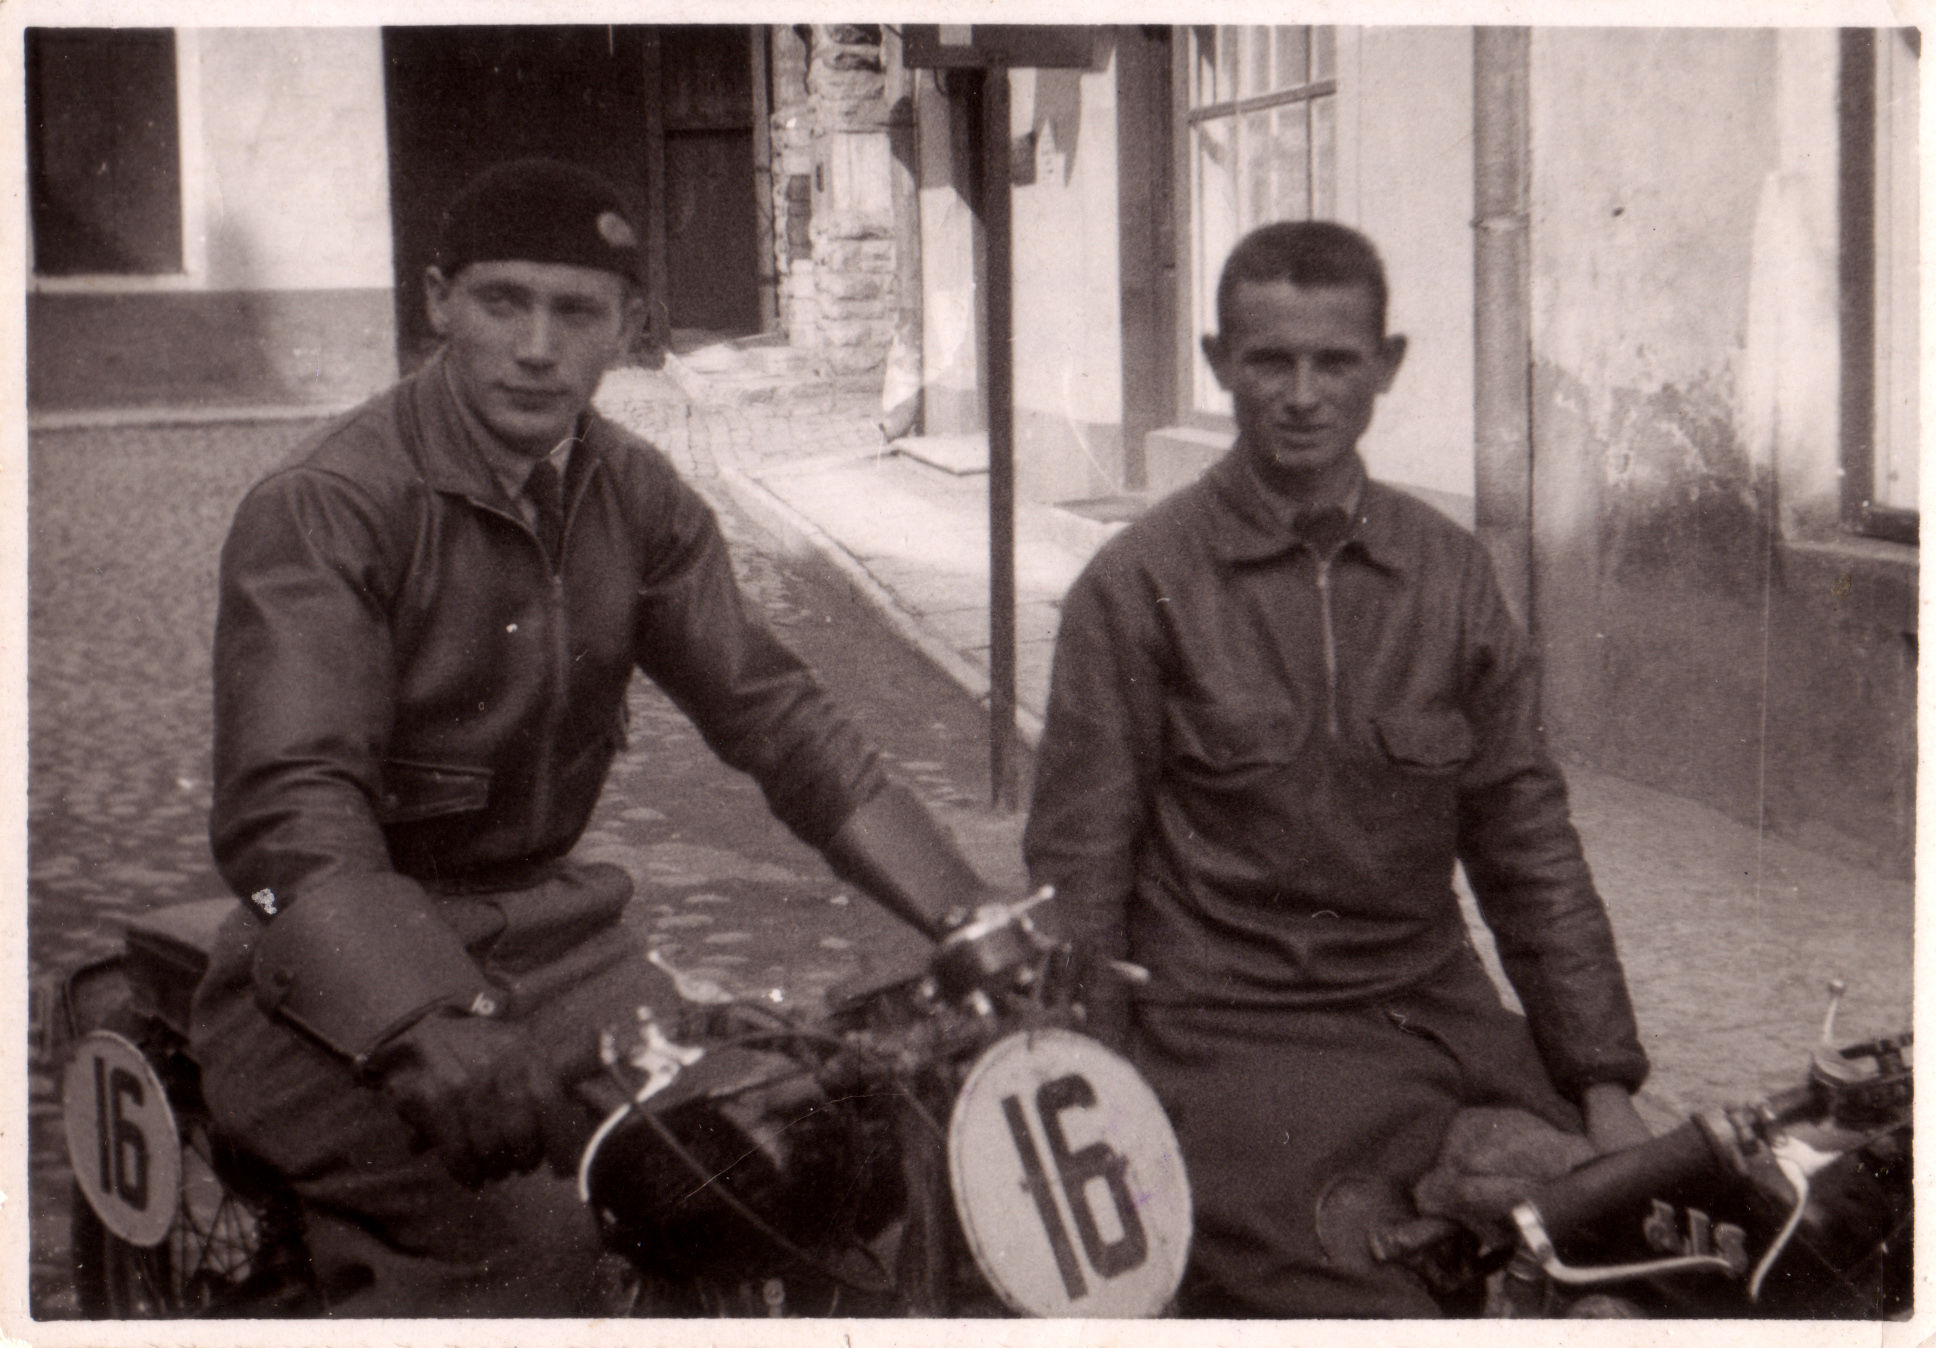 Motosportlased Elmar Rosenfeldt ja Richard Triik